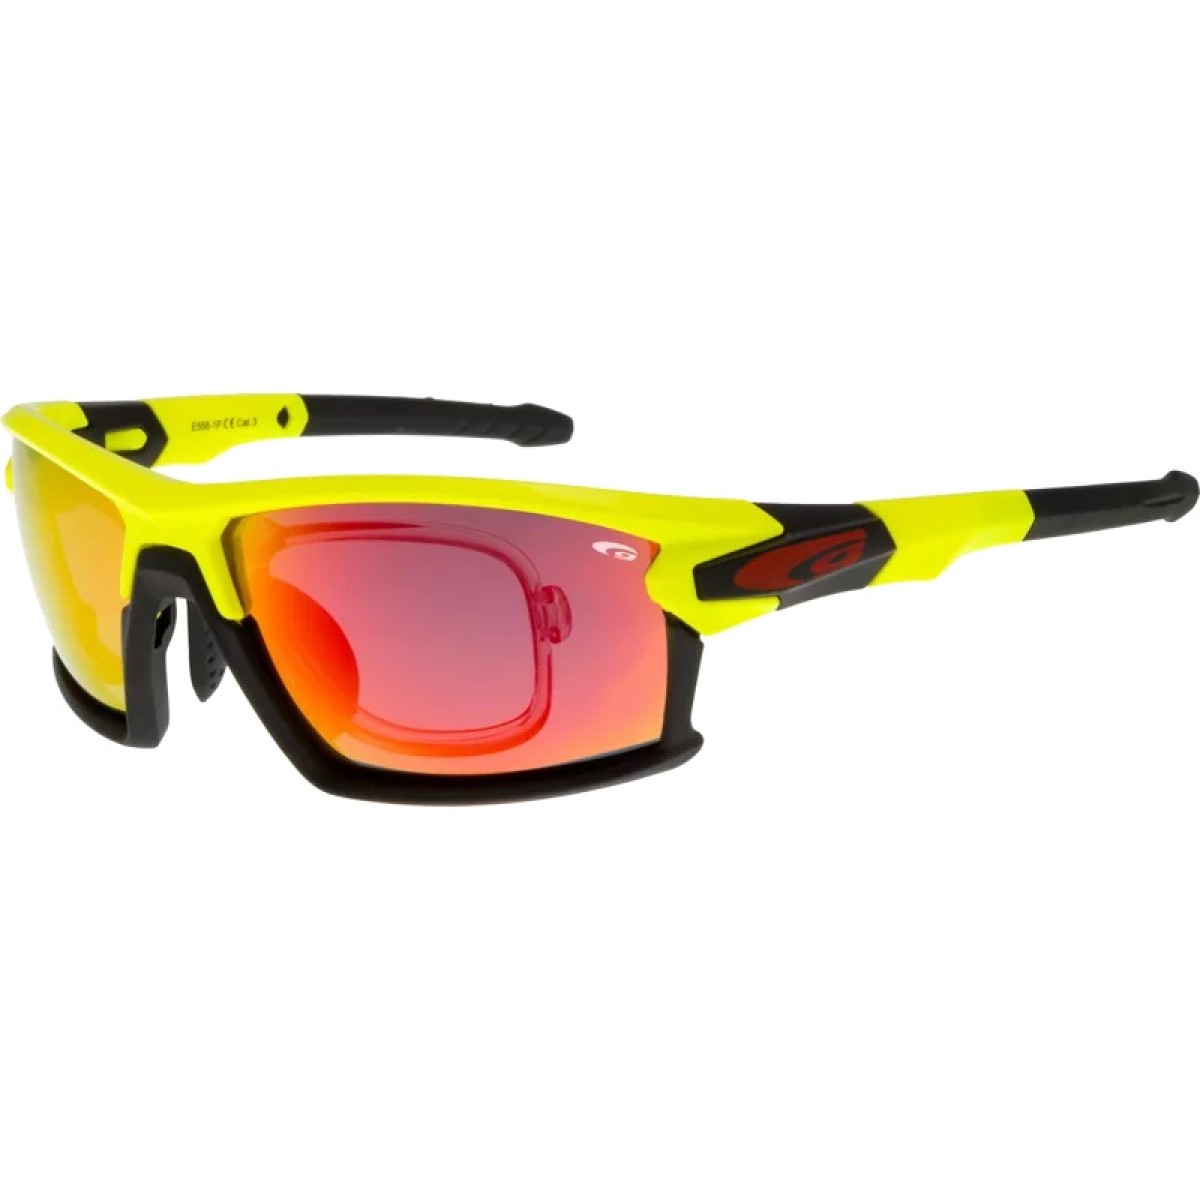 Optic polarized sunglasses E558-1PR GOGGLE - view 1